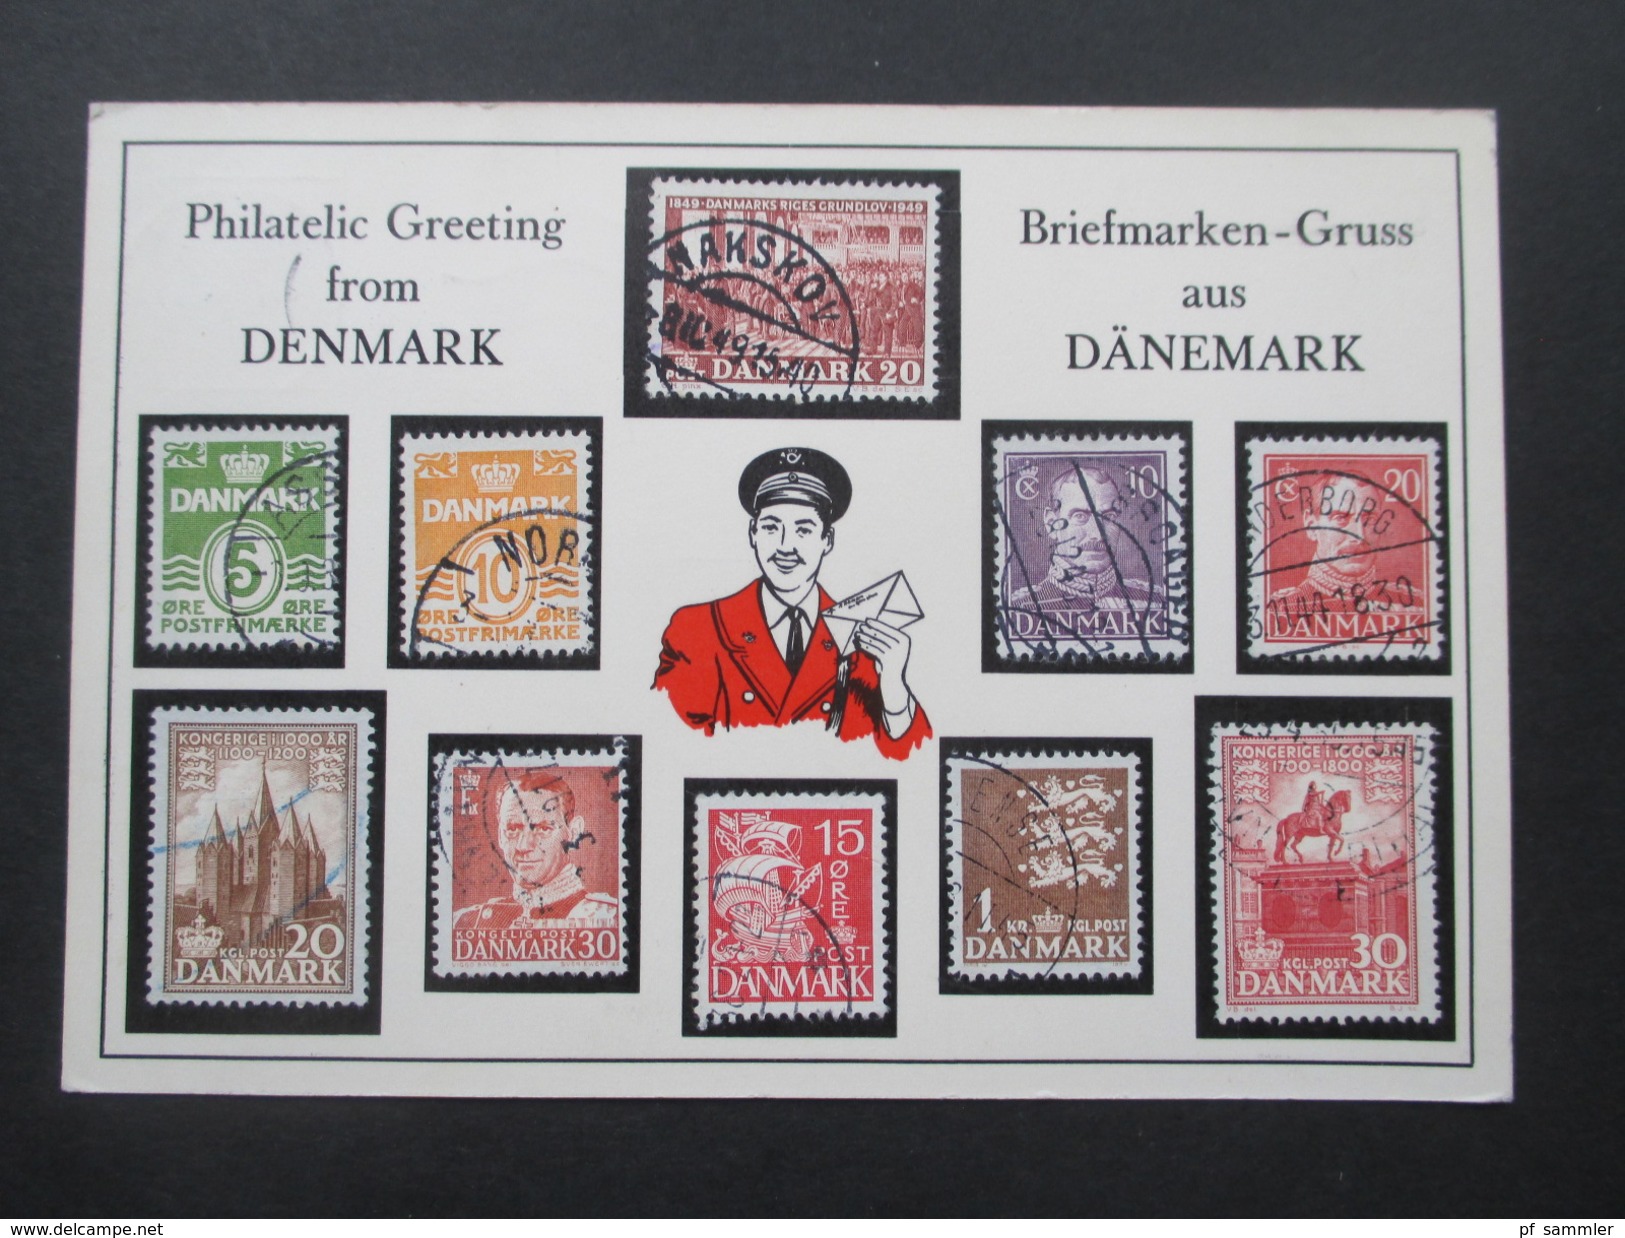 AK 1961 Briefmarken-Gruss Aus Dänemark / Philatelic Greeting From Denmark. Verschiedene Briefmarken Aus Dänemark Aufgekl - Briefmarken (Abbildungen)